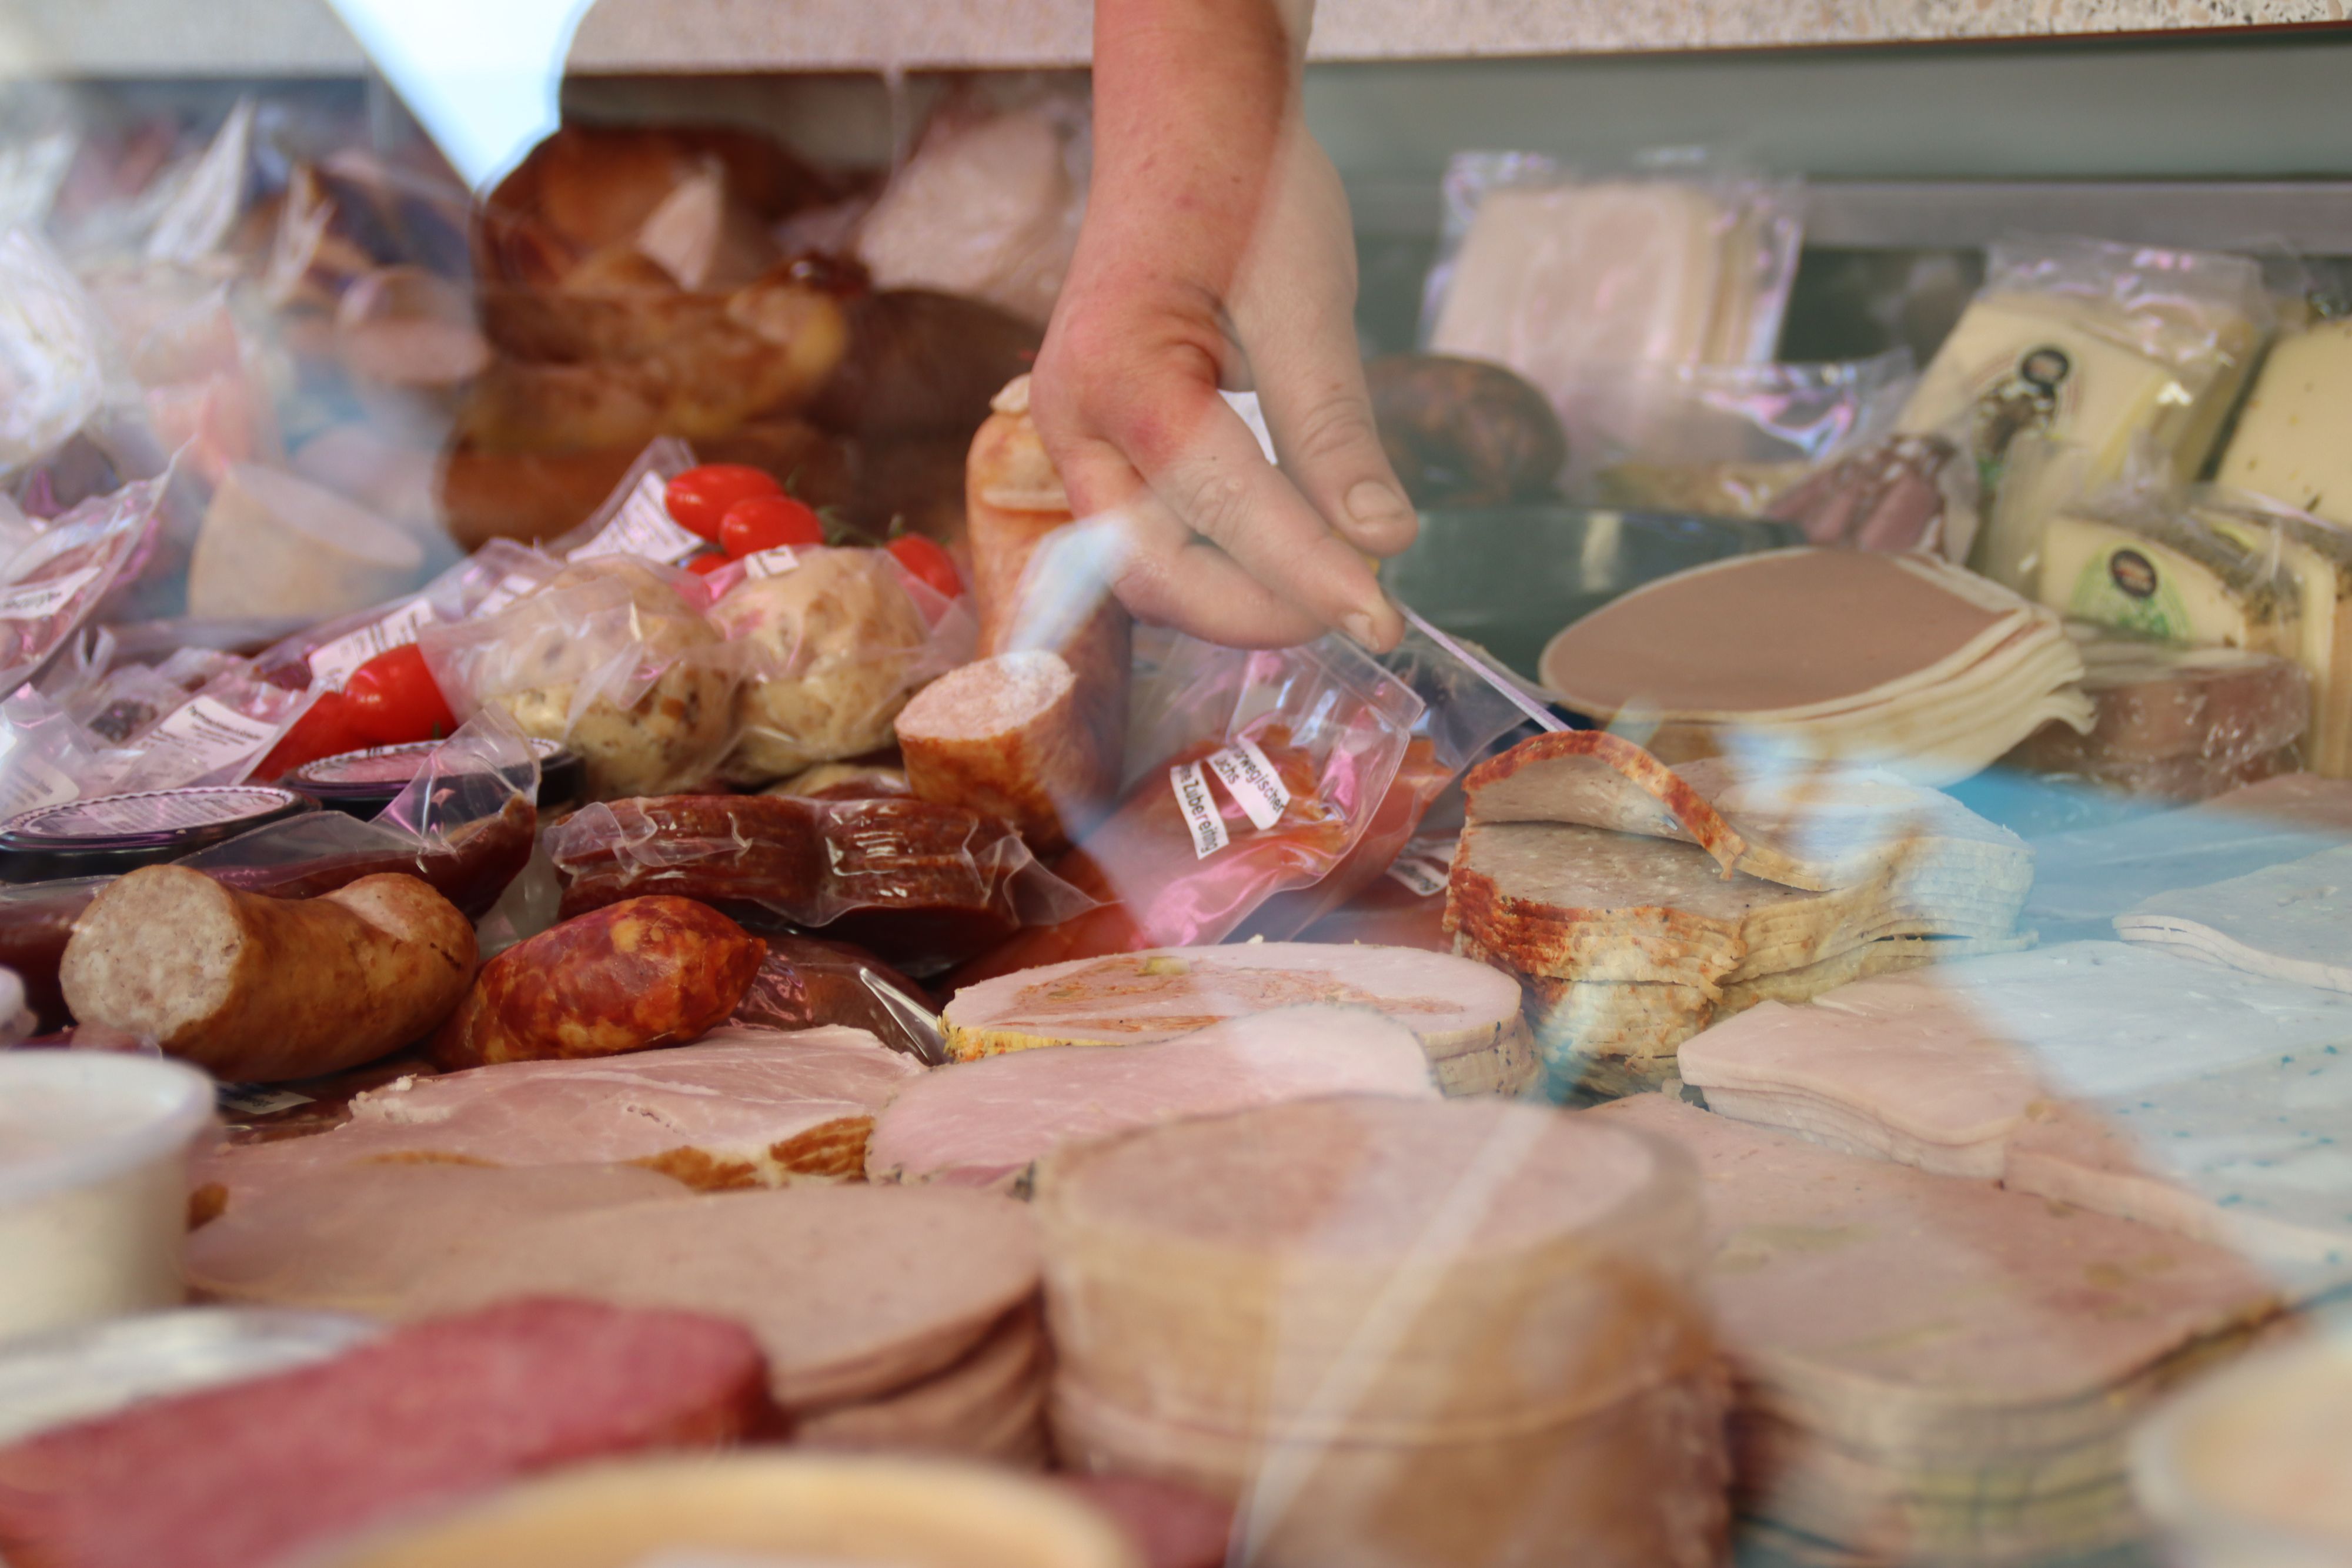 Hinter einer Verkaufstheke liegen Wurst, Fleisch und Käse. Ein Hand greift nach einem abgepacktem Stück Fleisch.